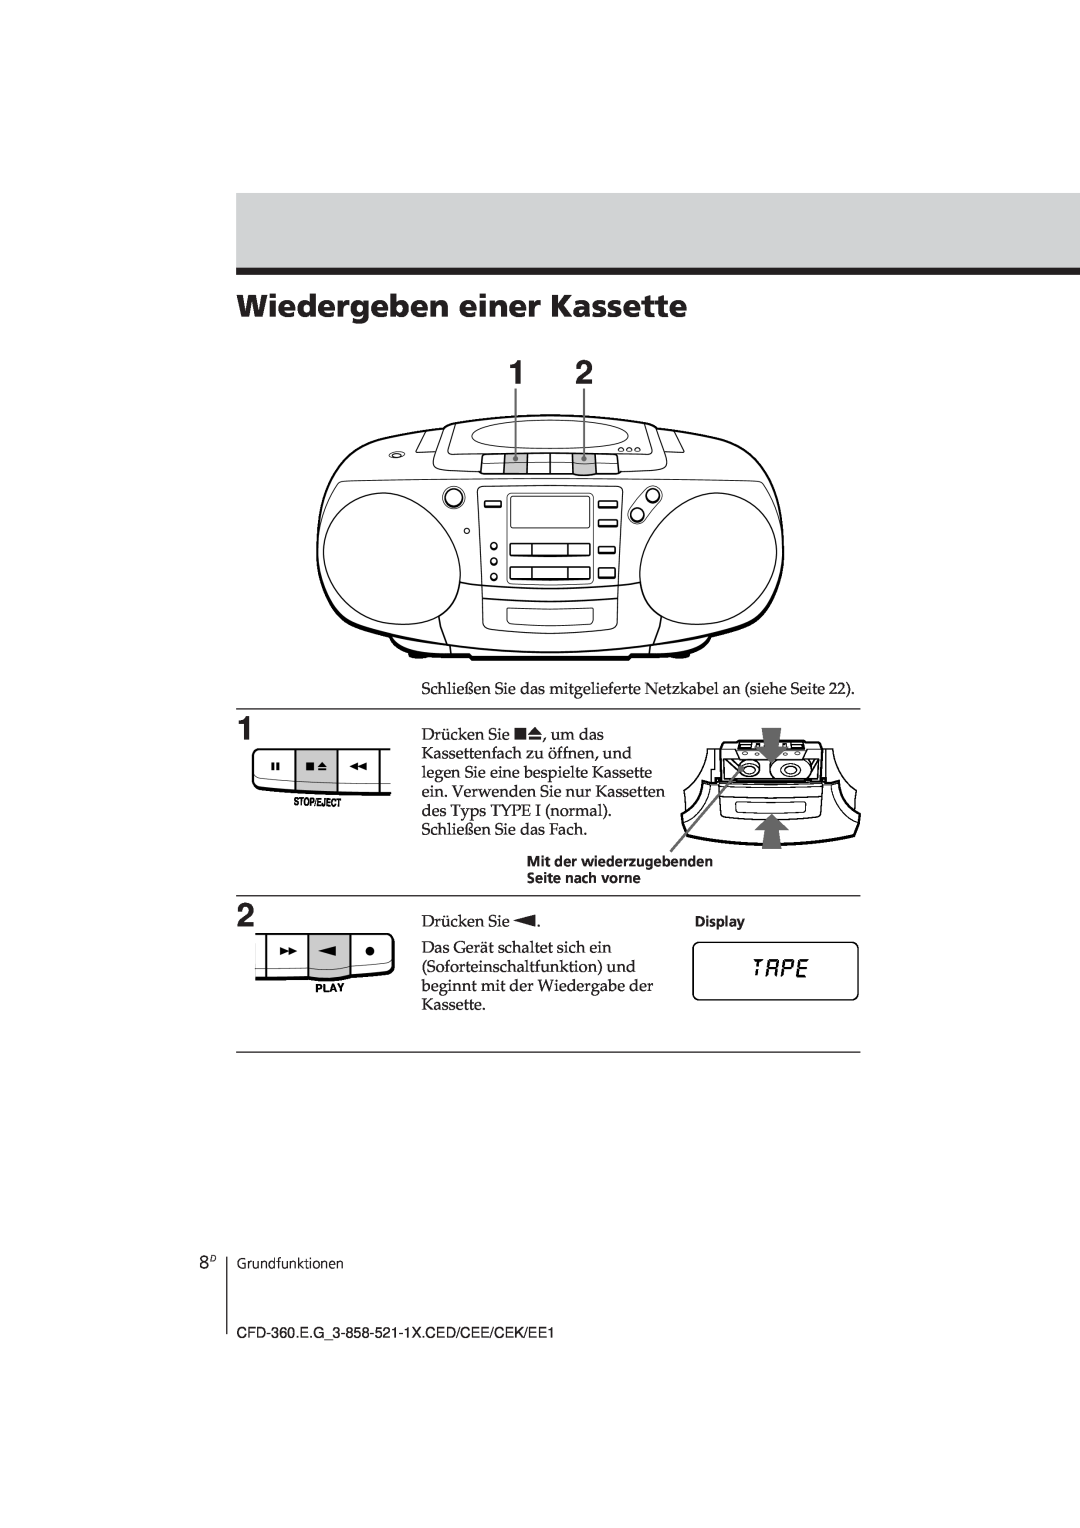 Sony CFD-360 operating instructions Wiedergeben einer Kassette 